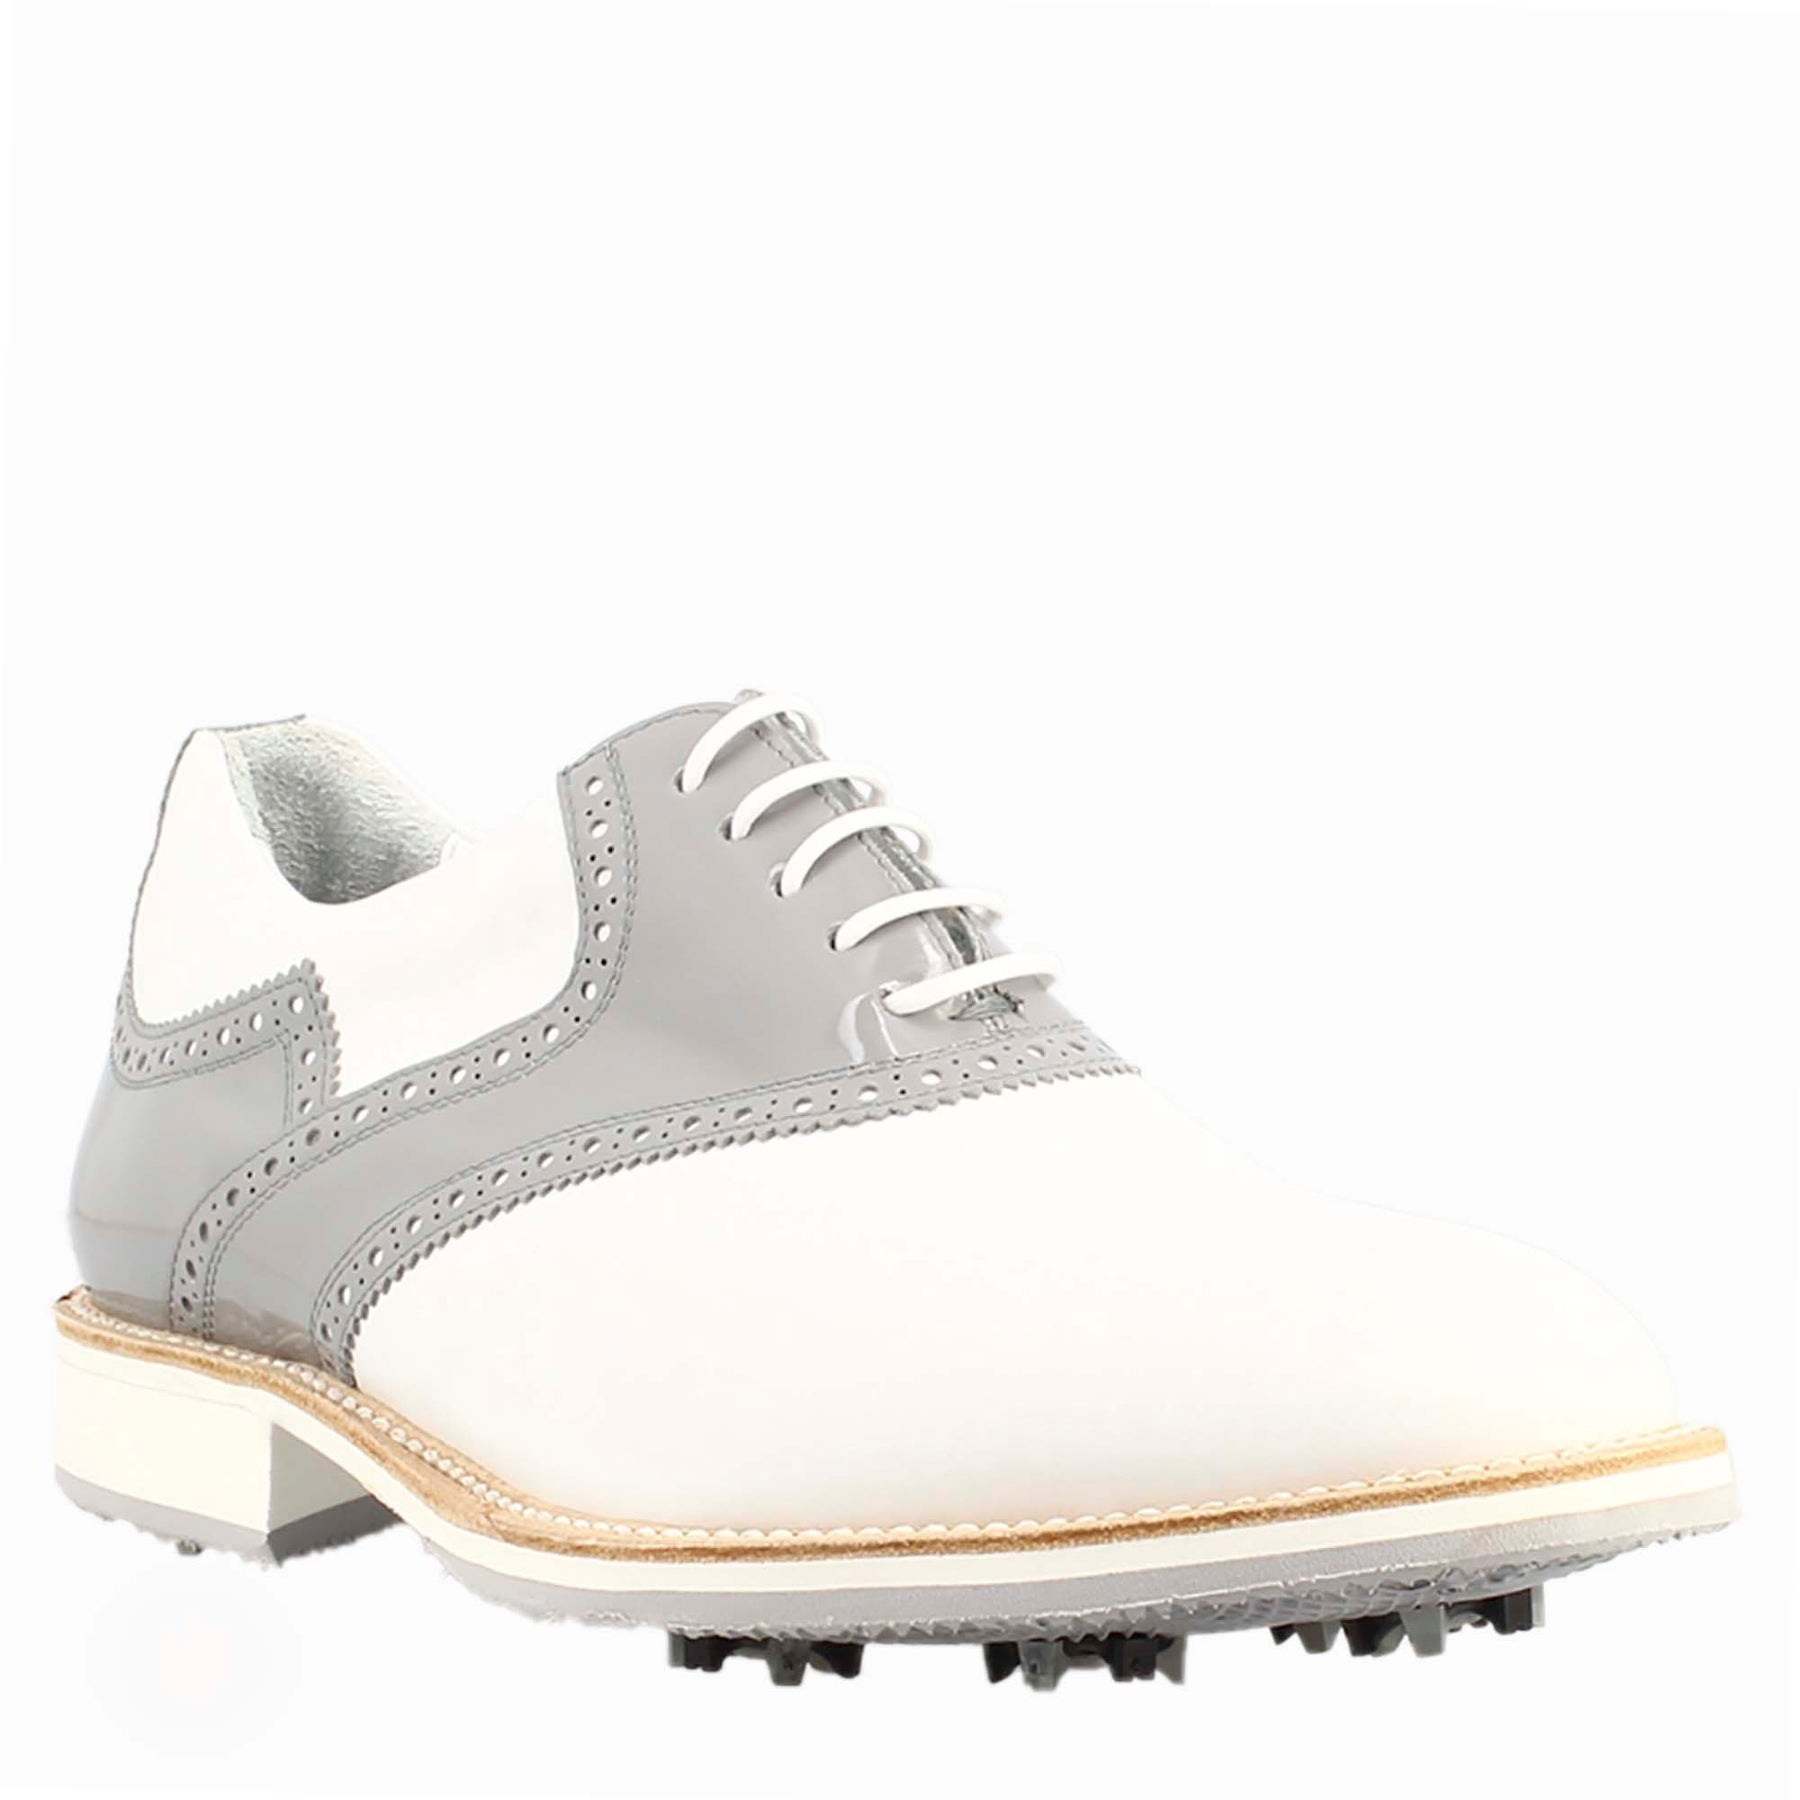 Chaussures de golf pour femme en cuir blanc et gris, avec des détails de brogue faits à la main